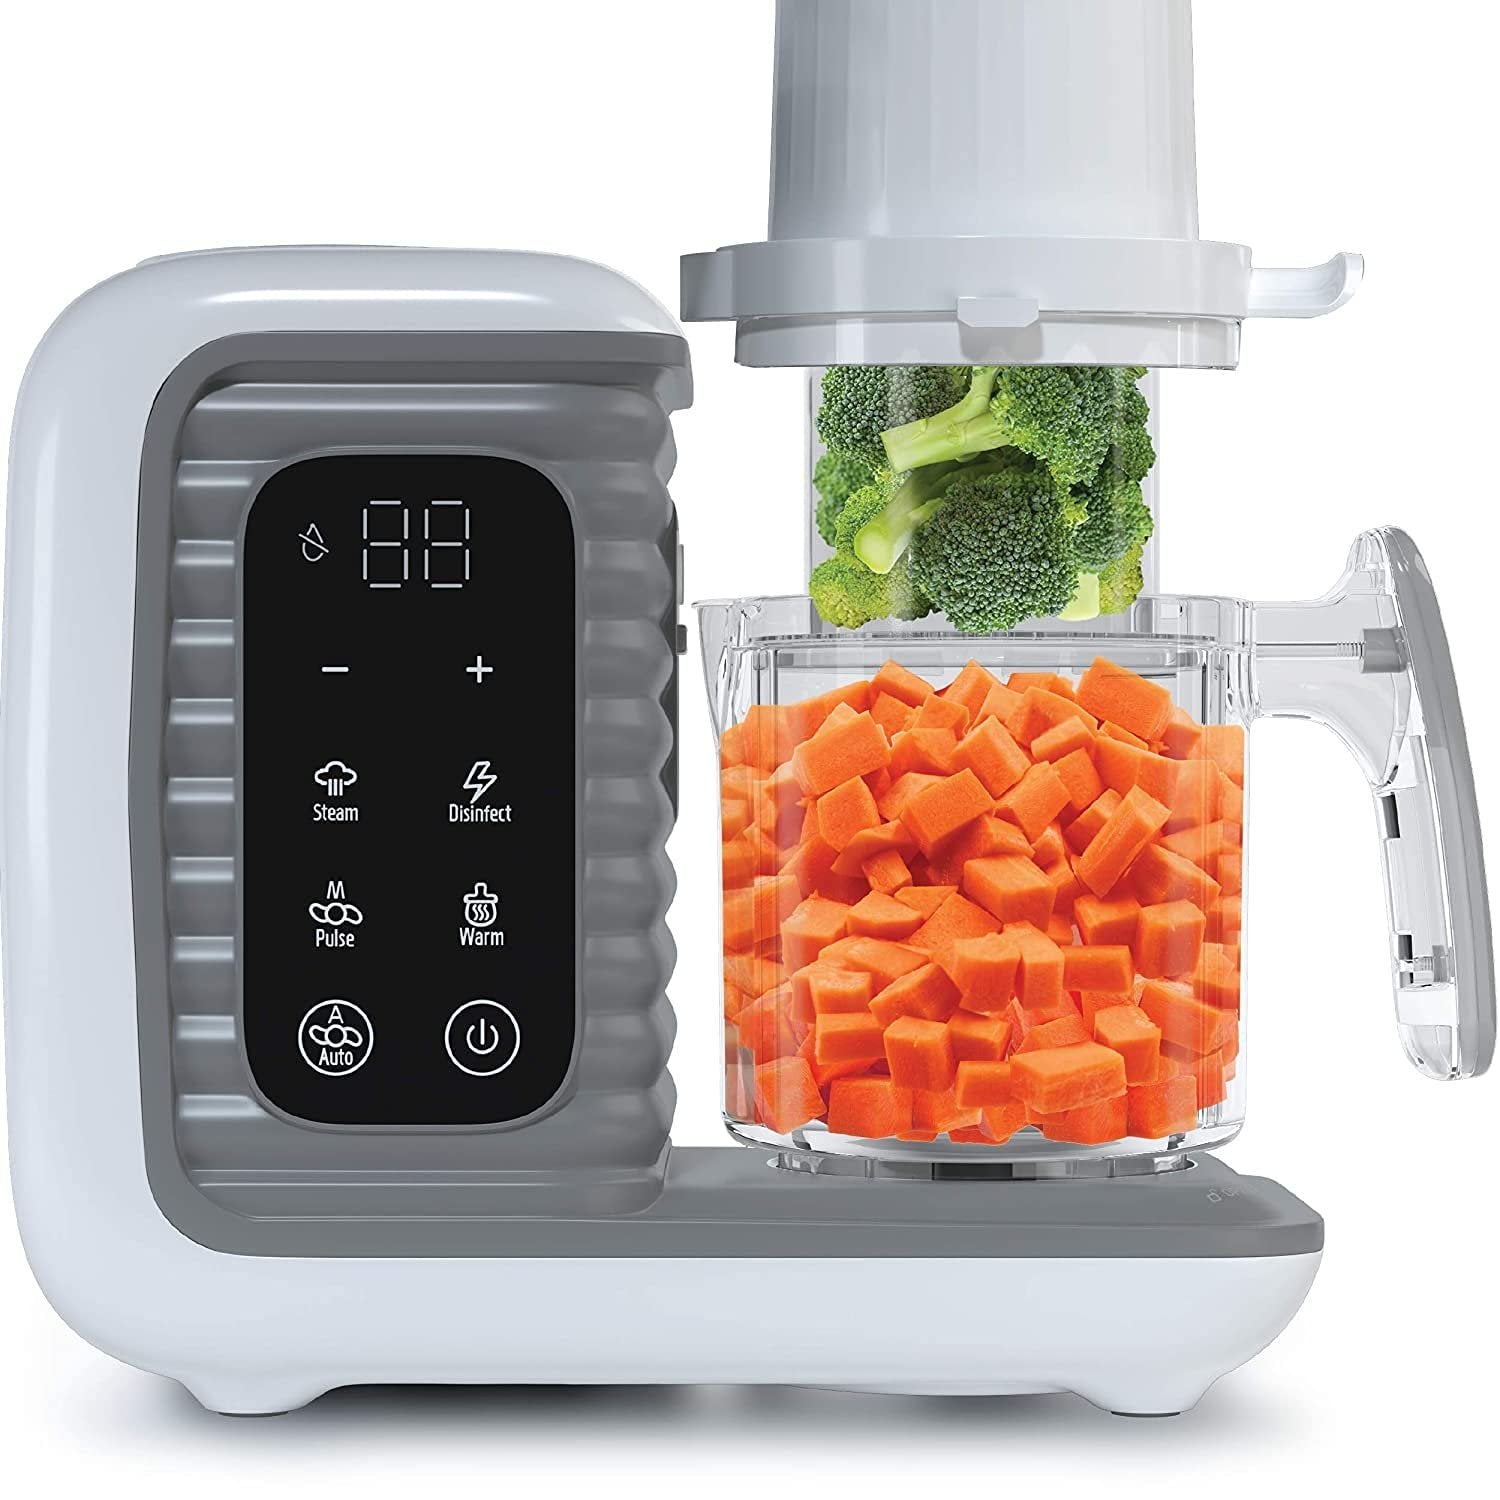 Smart Baby Food Maker & Processor Grey - 11.9 X 11.7 X 7.6 - 8 in 1 Steamer, Blender, Cooker, Masher, Puree, Formula & Bottle Warmer